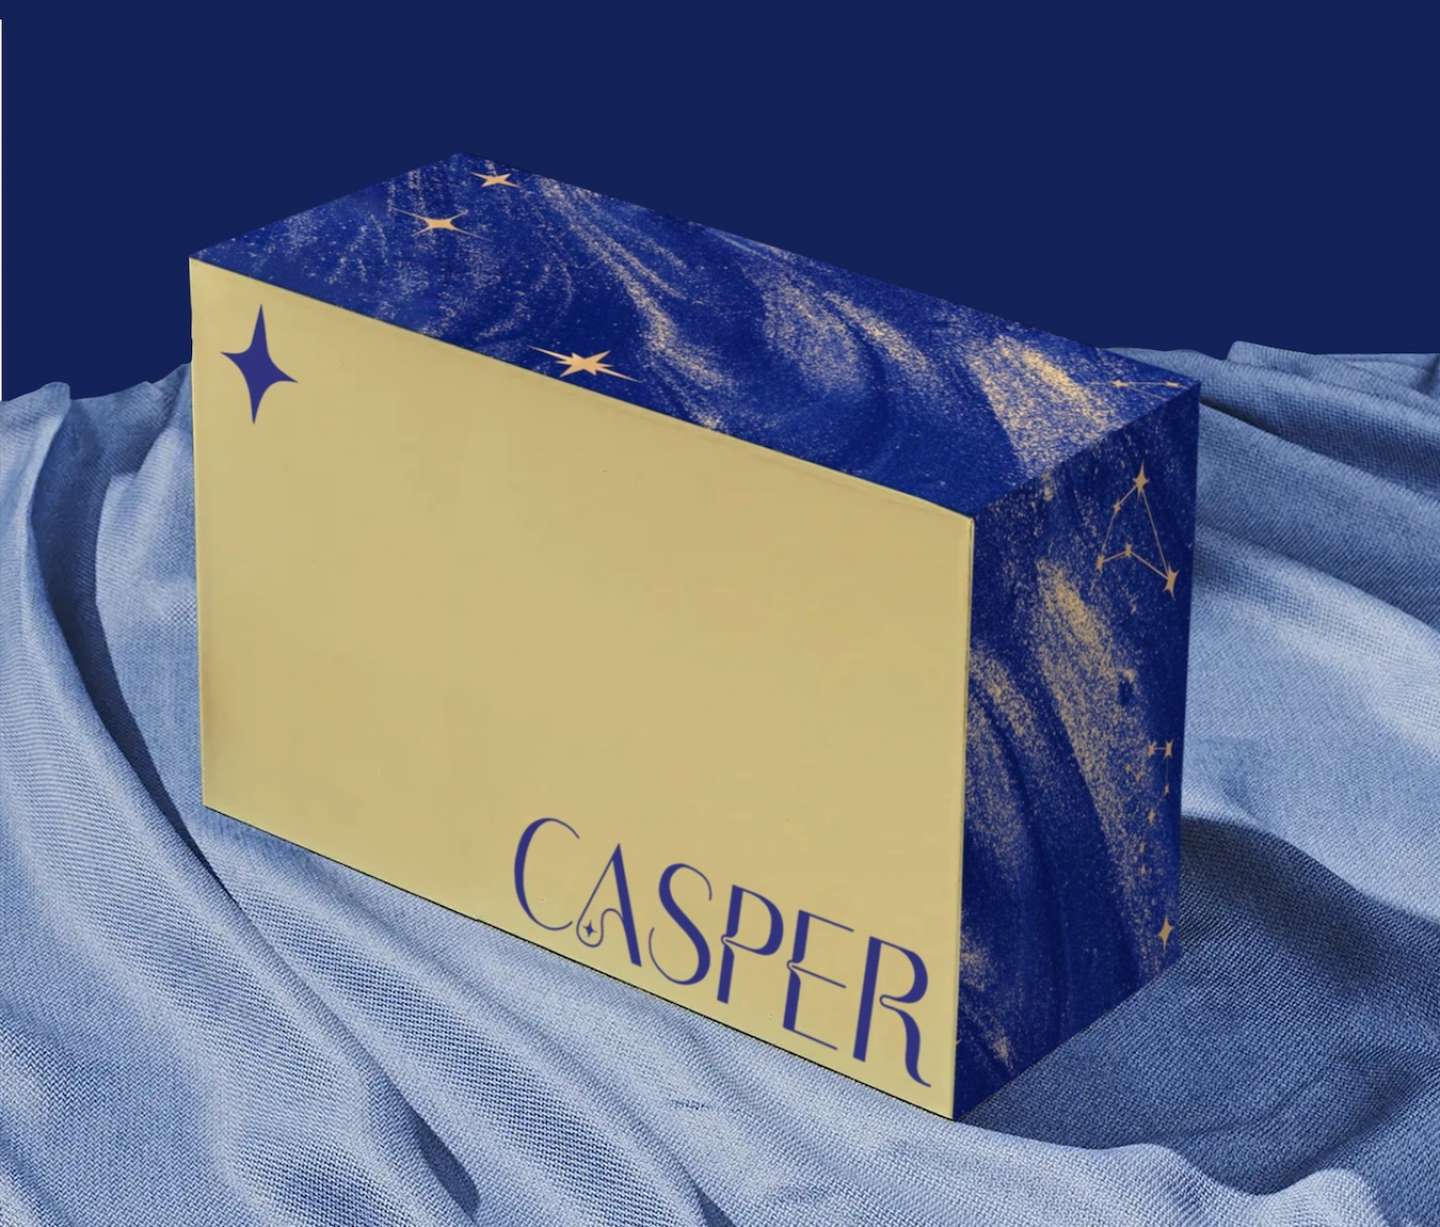 Casper Rebrand